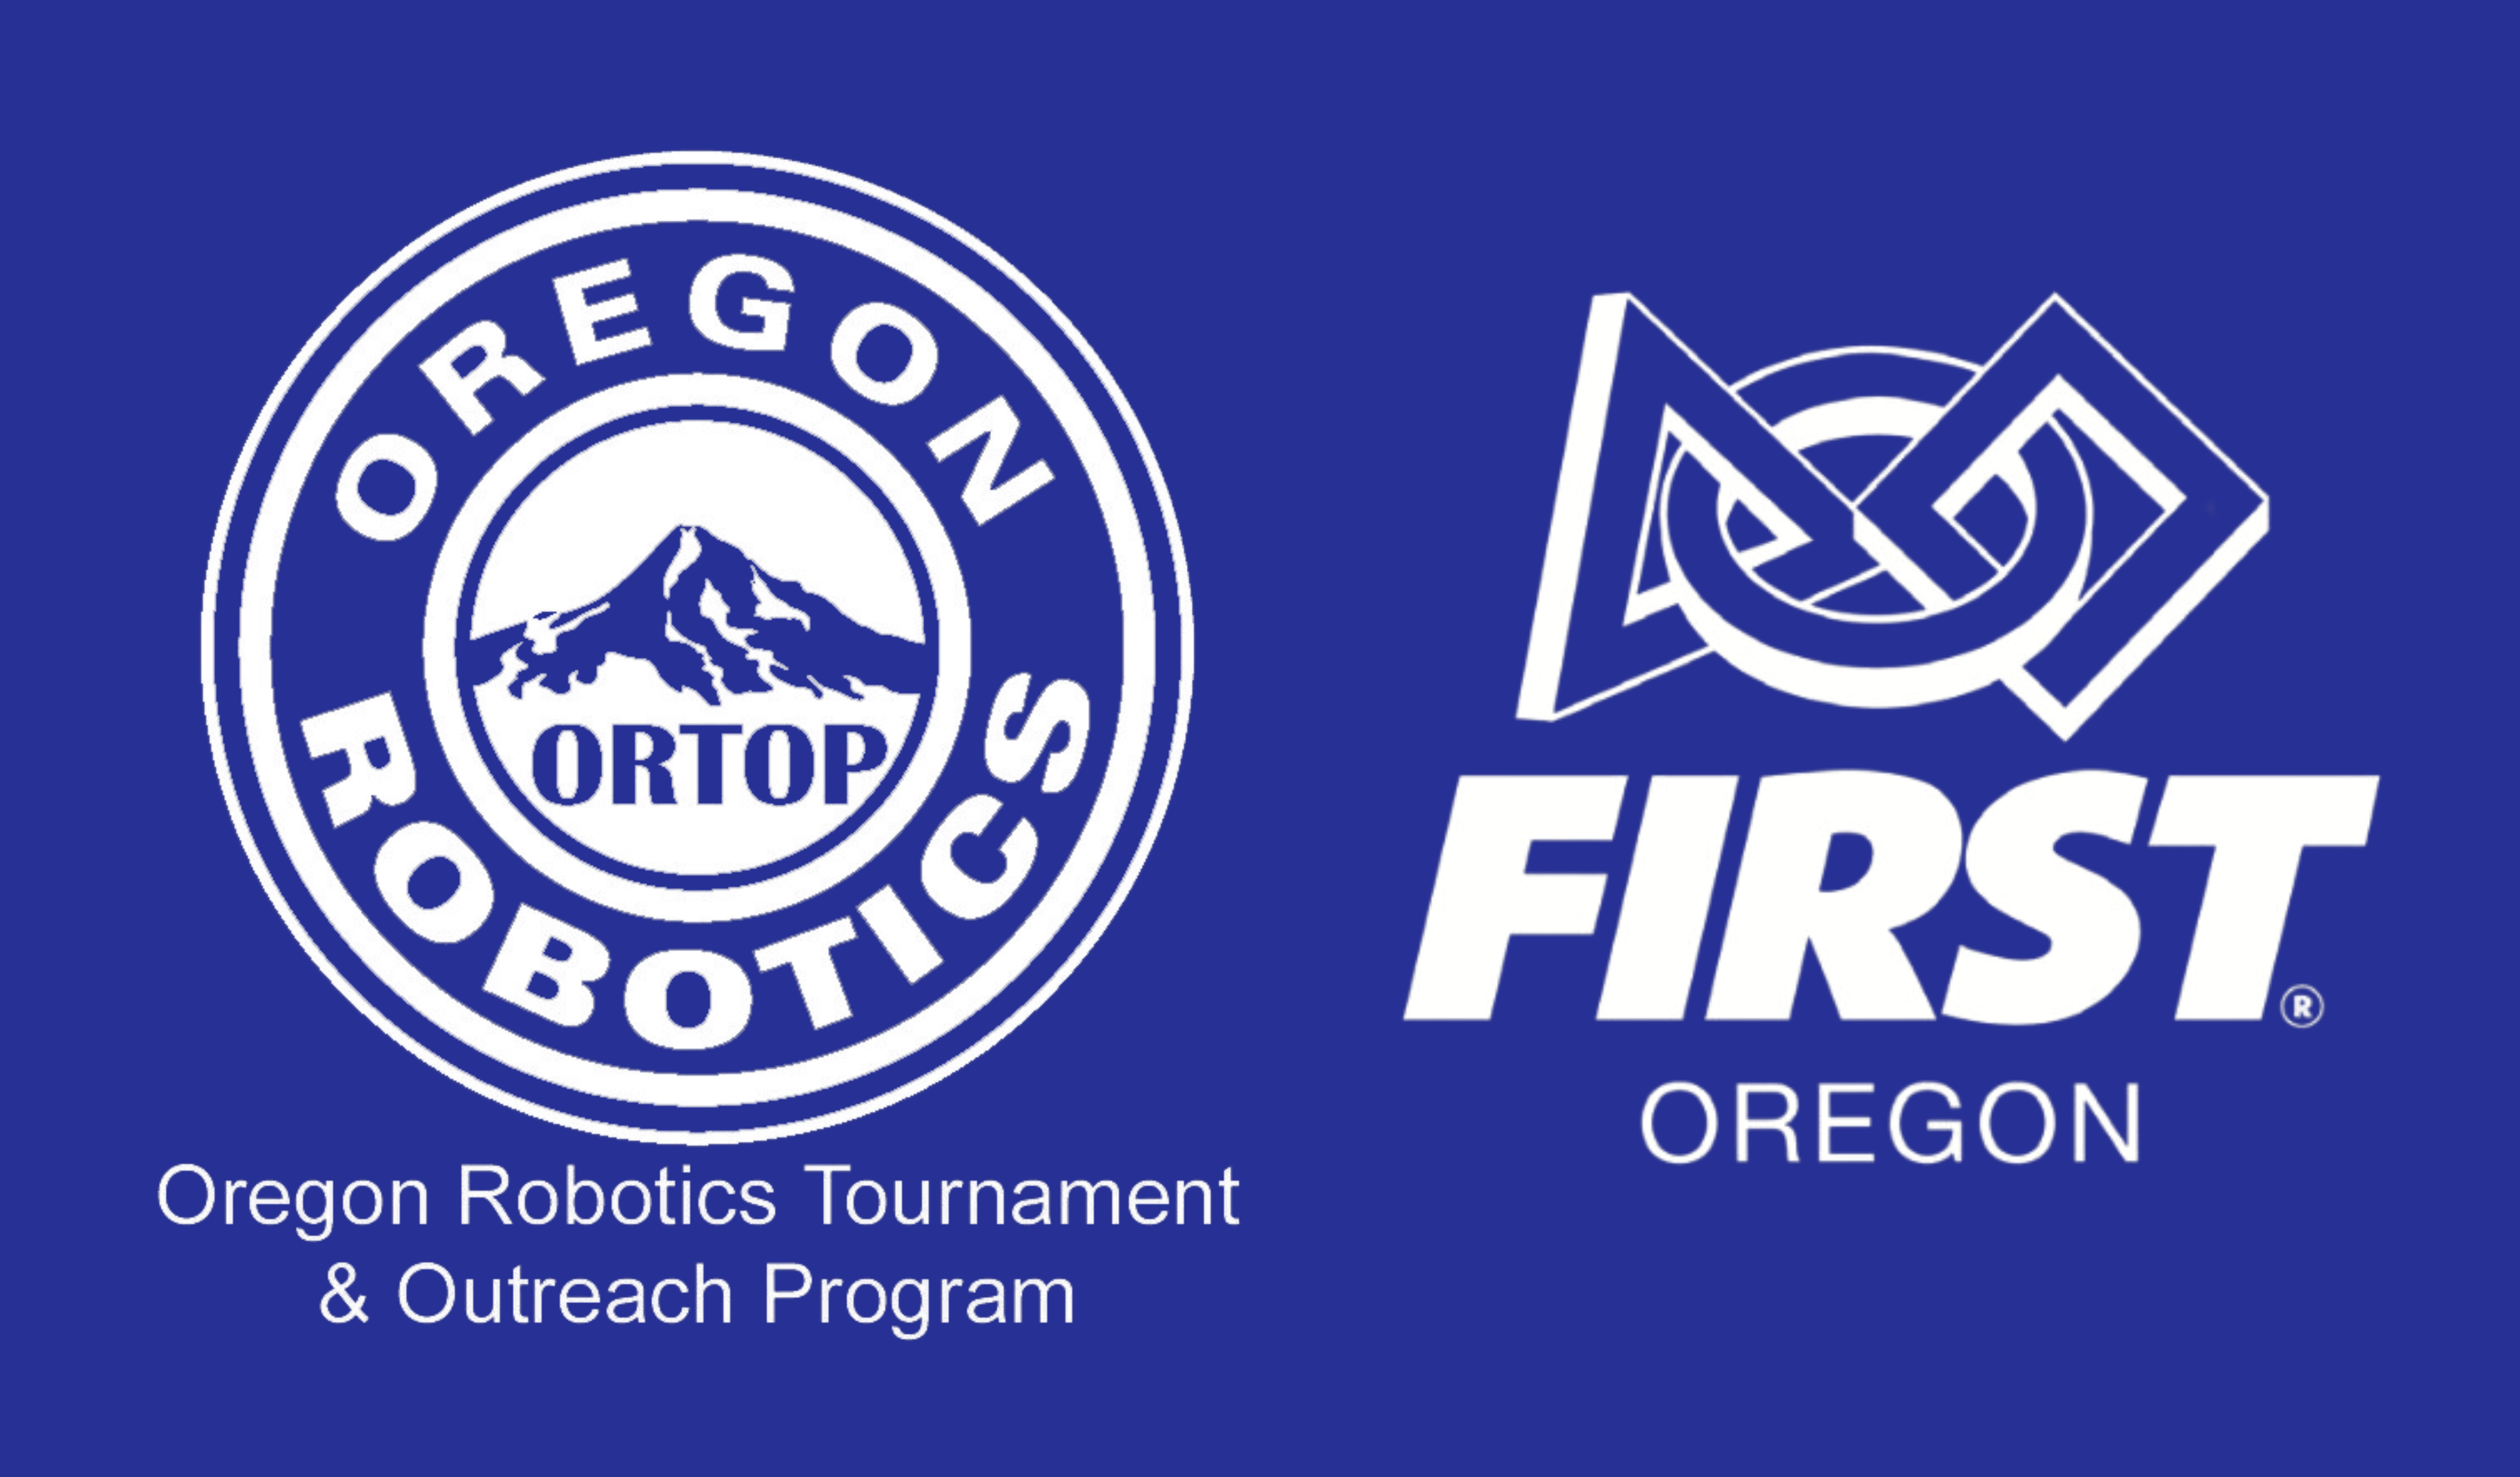 Oregon Robotics Tournament & Outreach Program -- FIRST Oregon